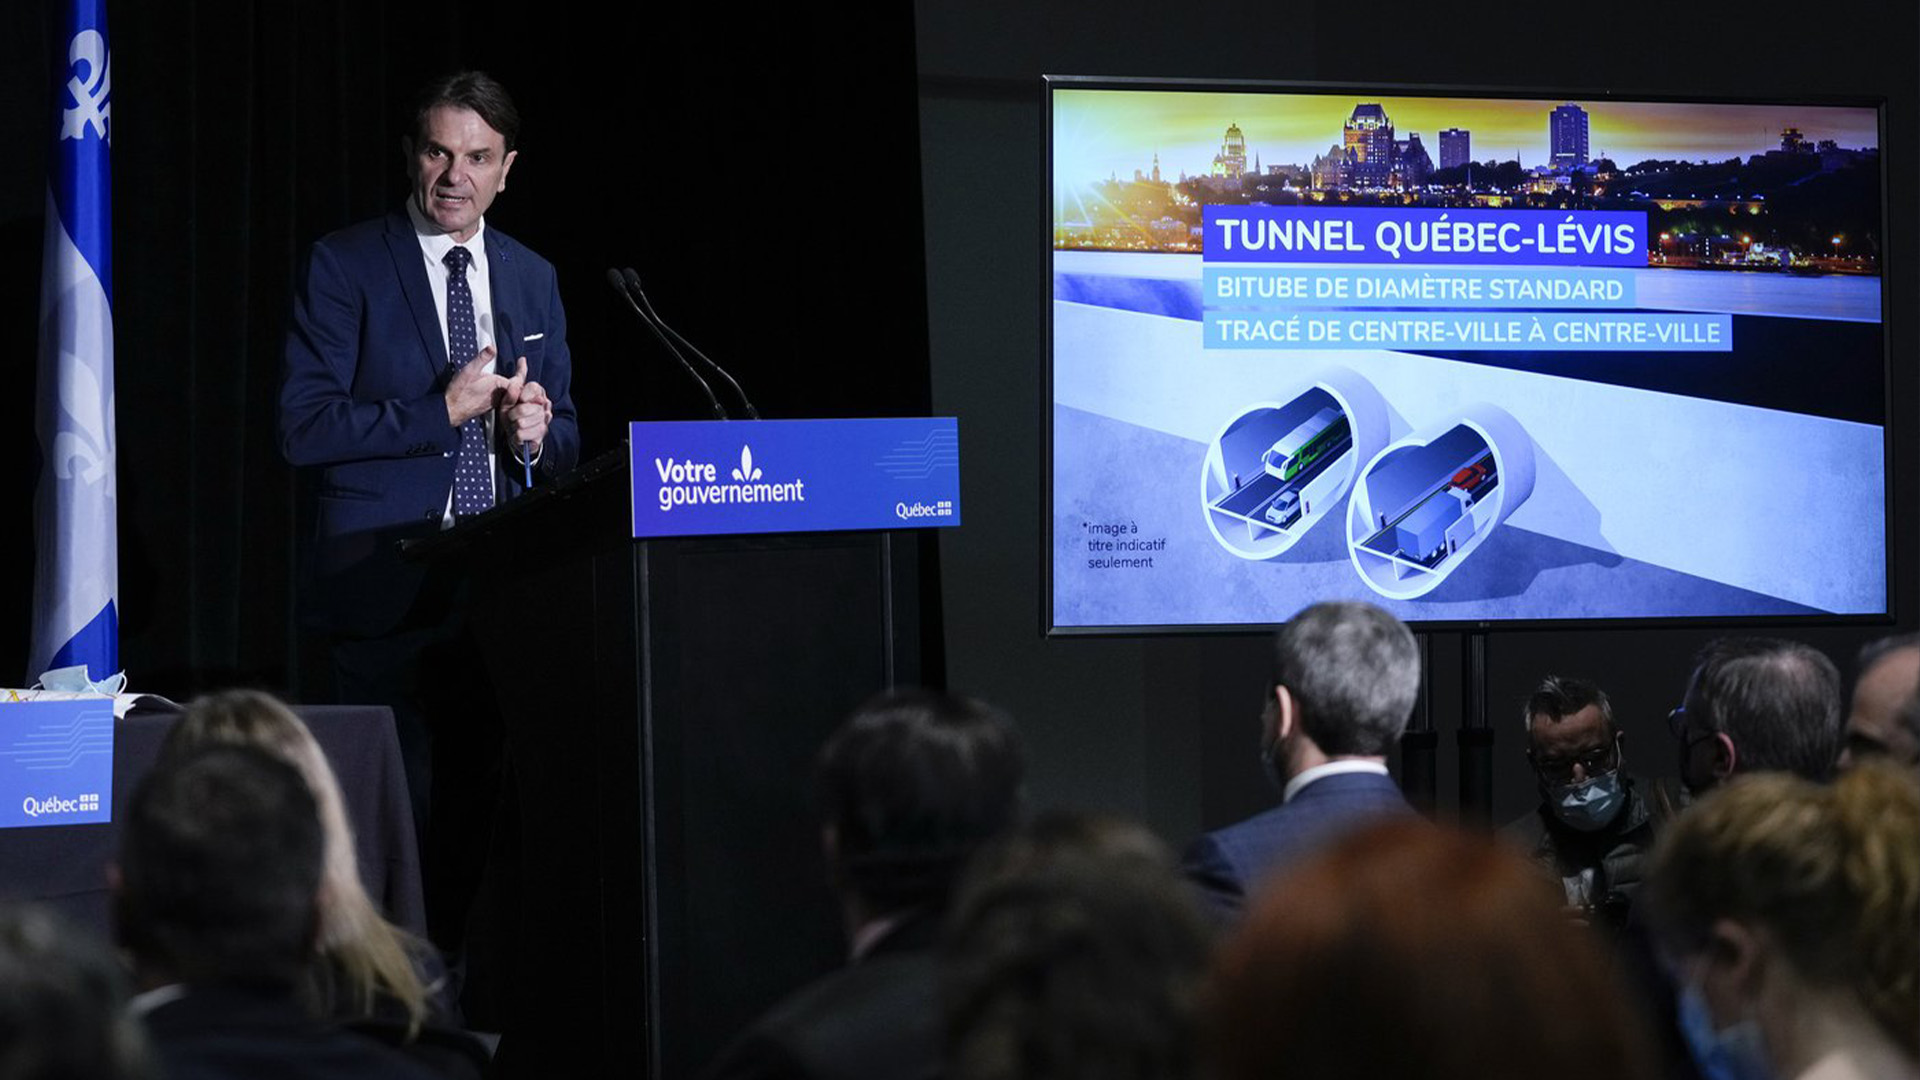 Le ministre des Transports du Québec, François Bonnardel, prend la parole lors d'une conférence de presse au Centre des congrès de Lévis, au Québec, le jeudi 14 avril 2022.